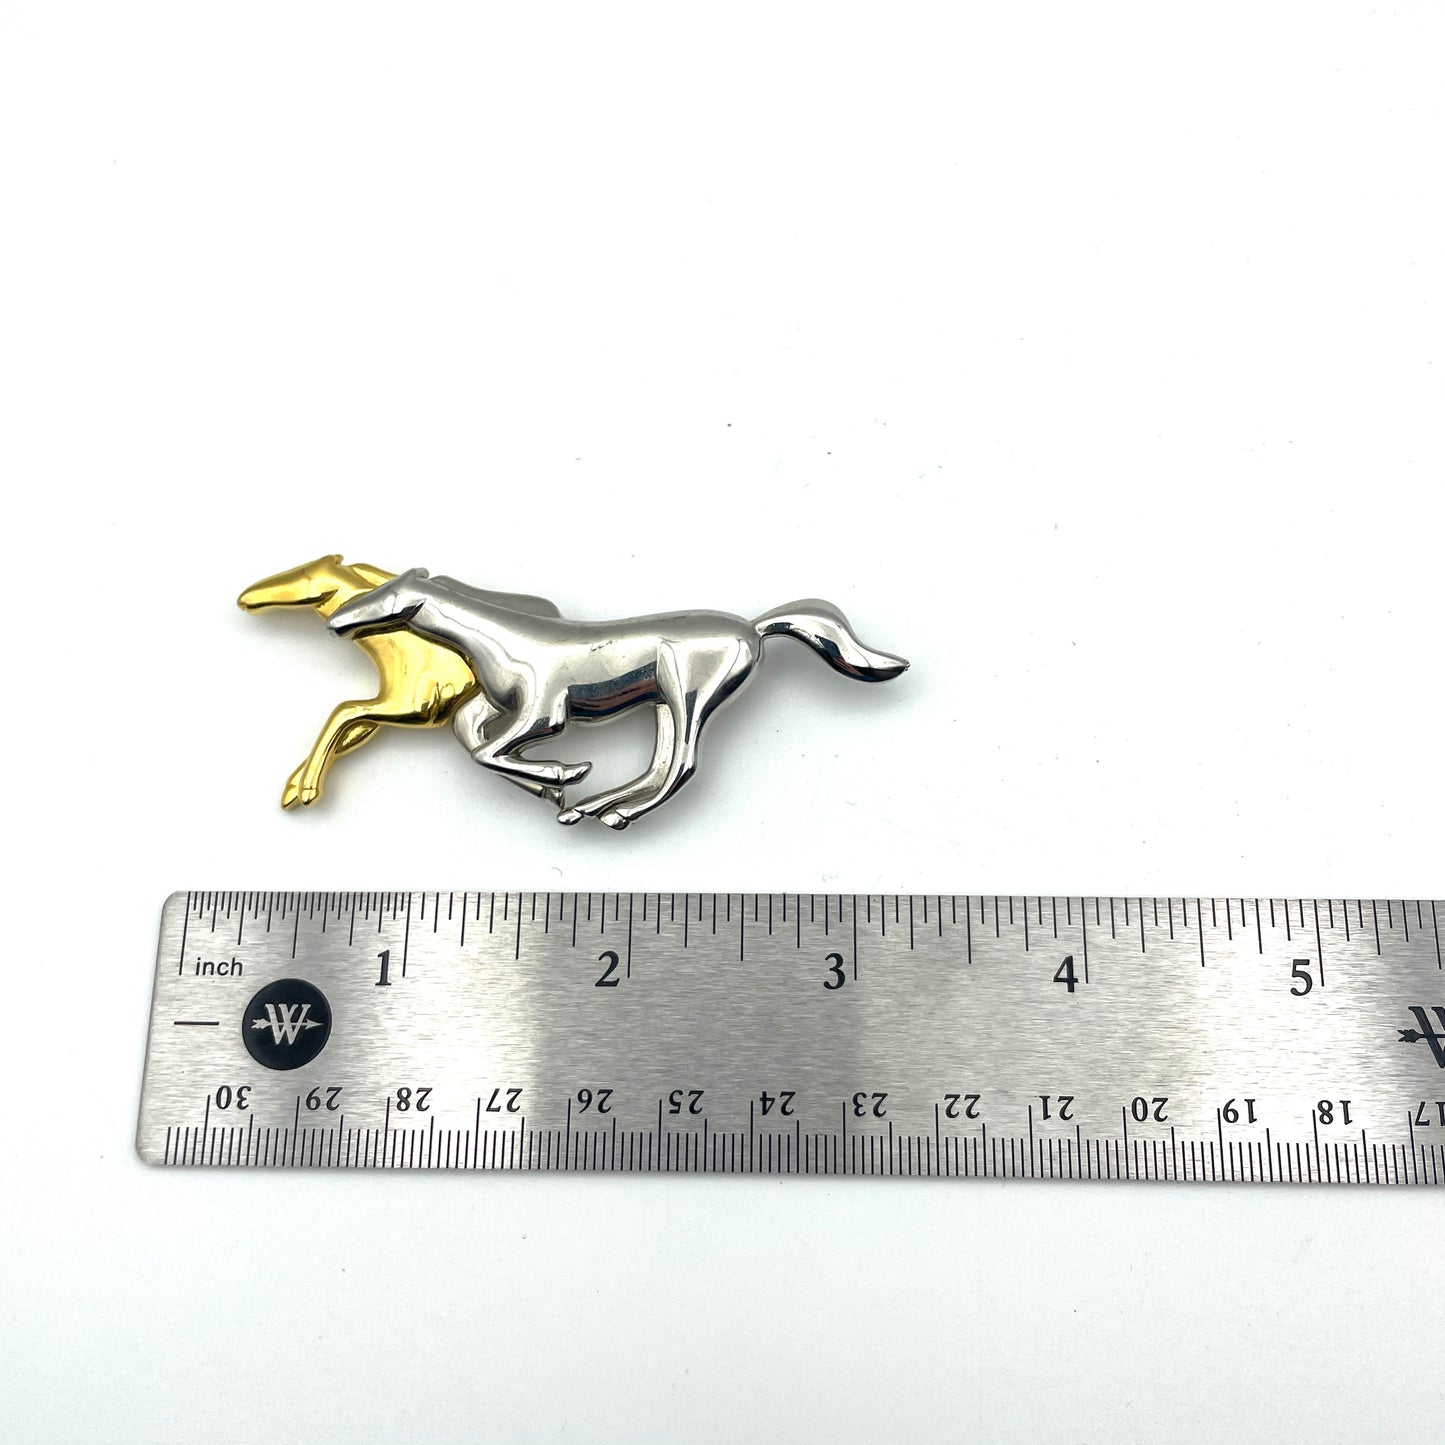 Pair of Horses Pin